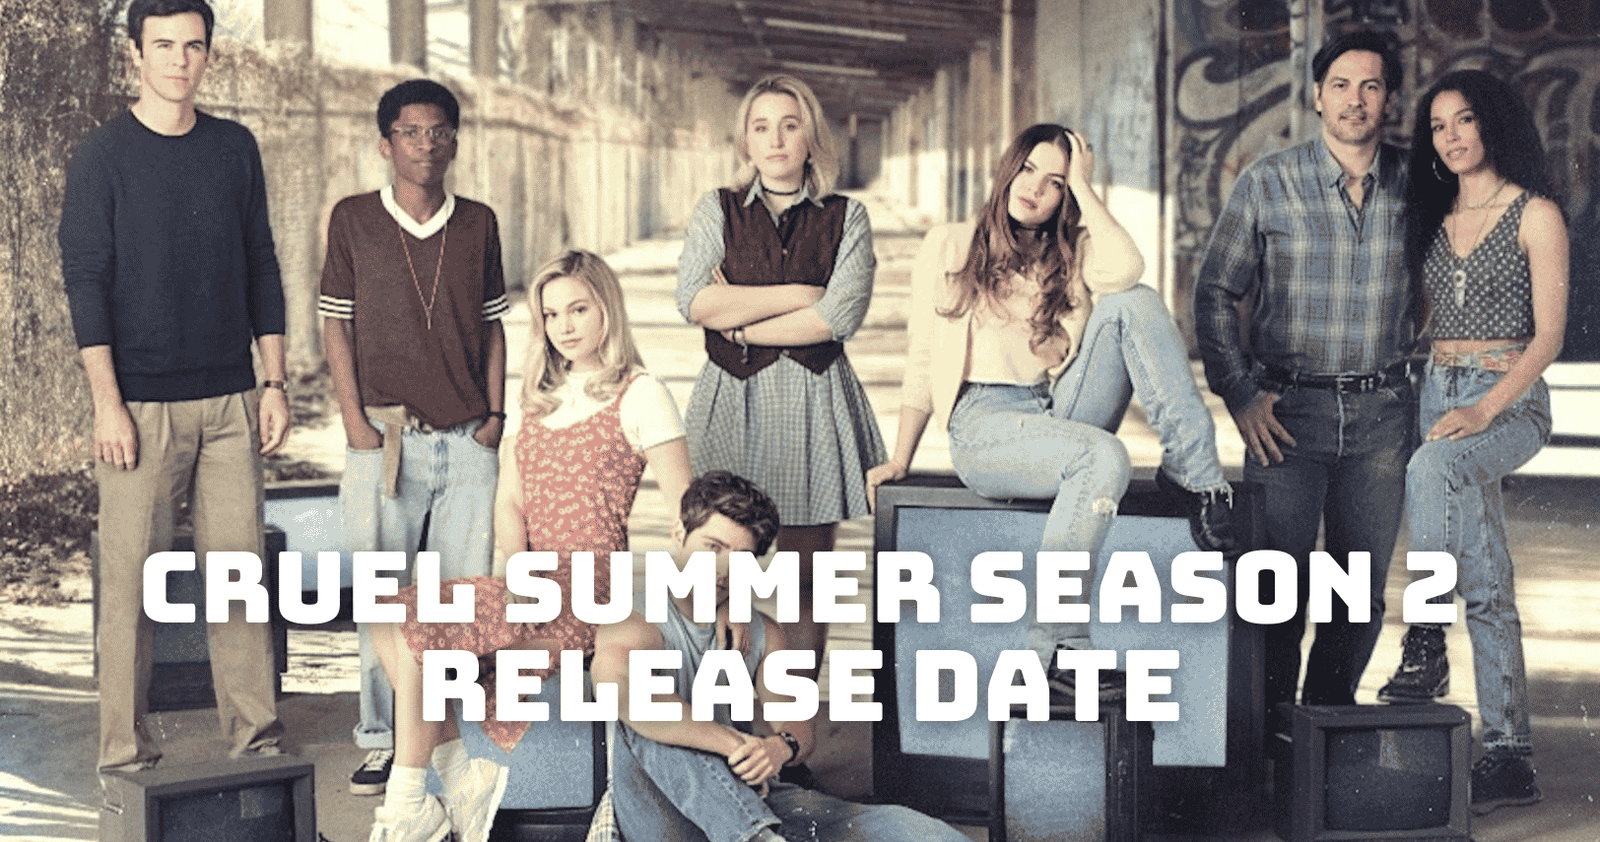 Cruel Summer Season 2 Release Date, Trailer - Is it Canceled?